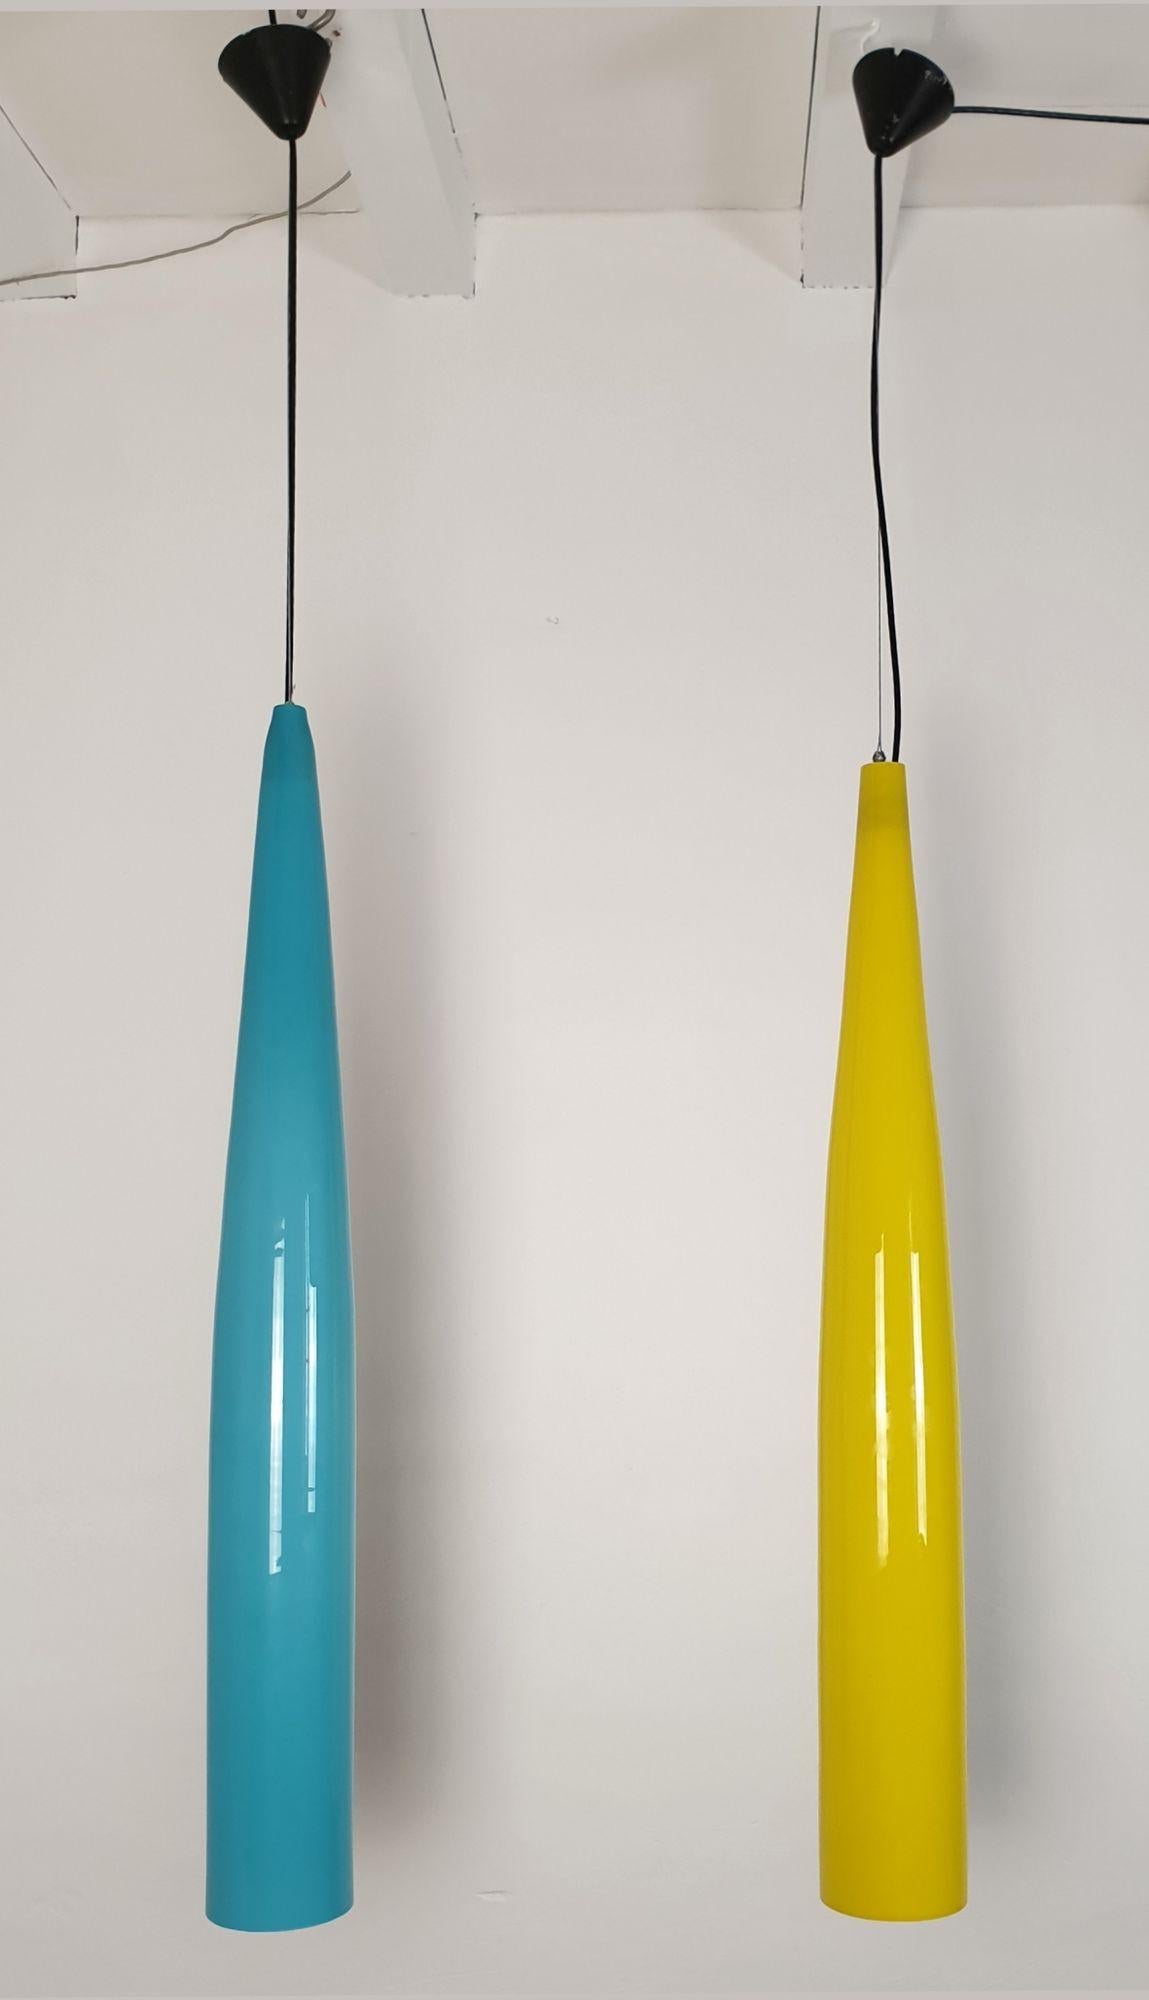 Sehr lange Pendelleuchten aus Murano-Glas, von Alessandro Pianon für Vistosi, Italien 1960er Jahre.
Das Paar besteht aus einem himmelblauen und einem gelben Murano-Glas-Anhänger.
Das doppelschichtige Glas (weiß auf der Innenseite des blauen Glases)